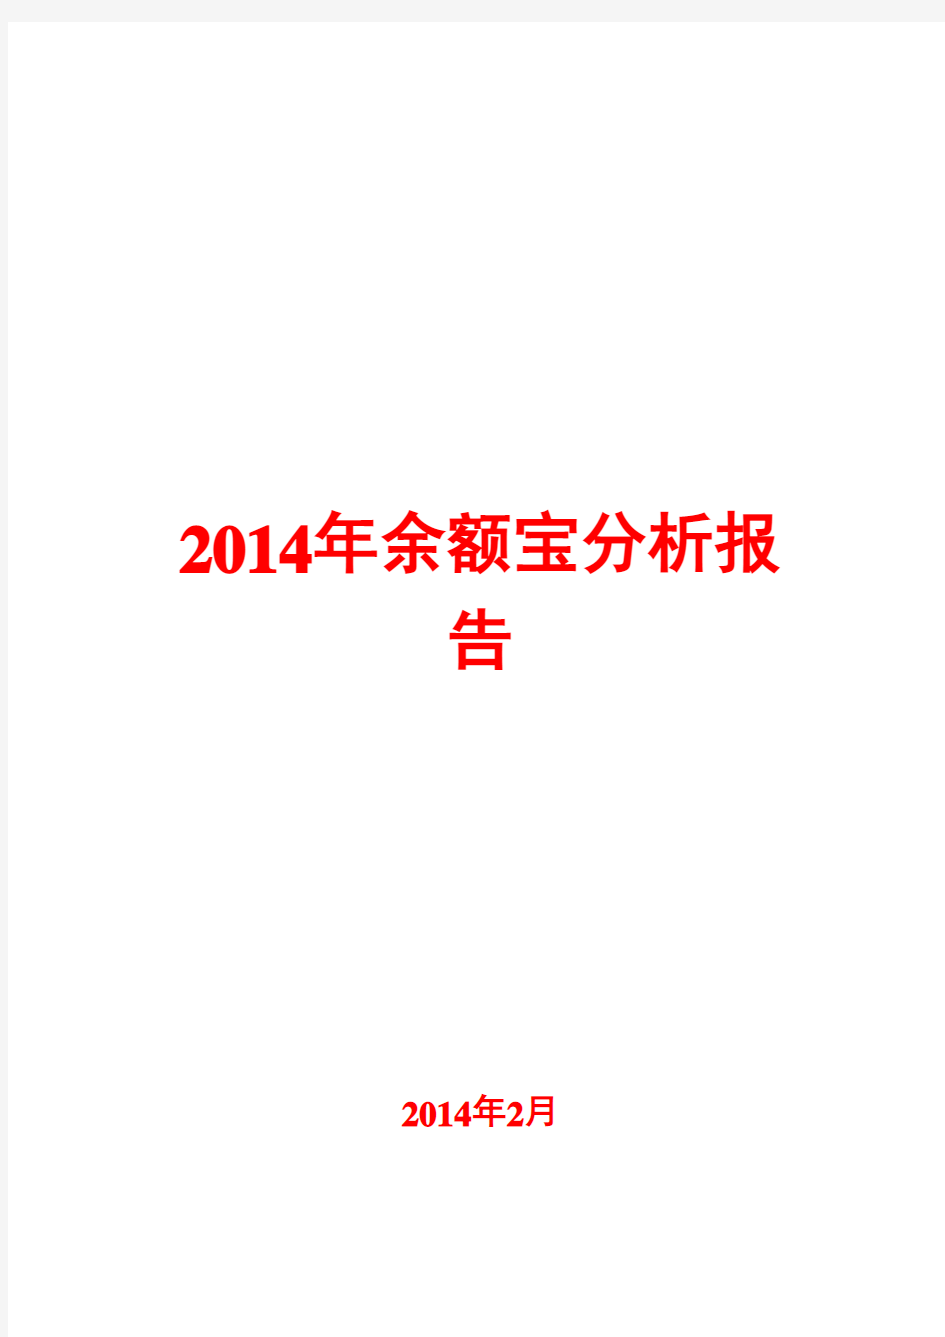 2014年余额宝分析报告